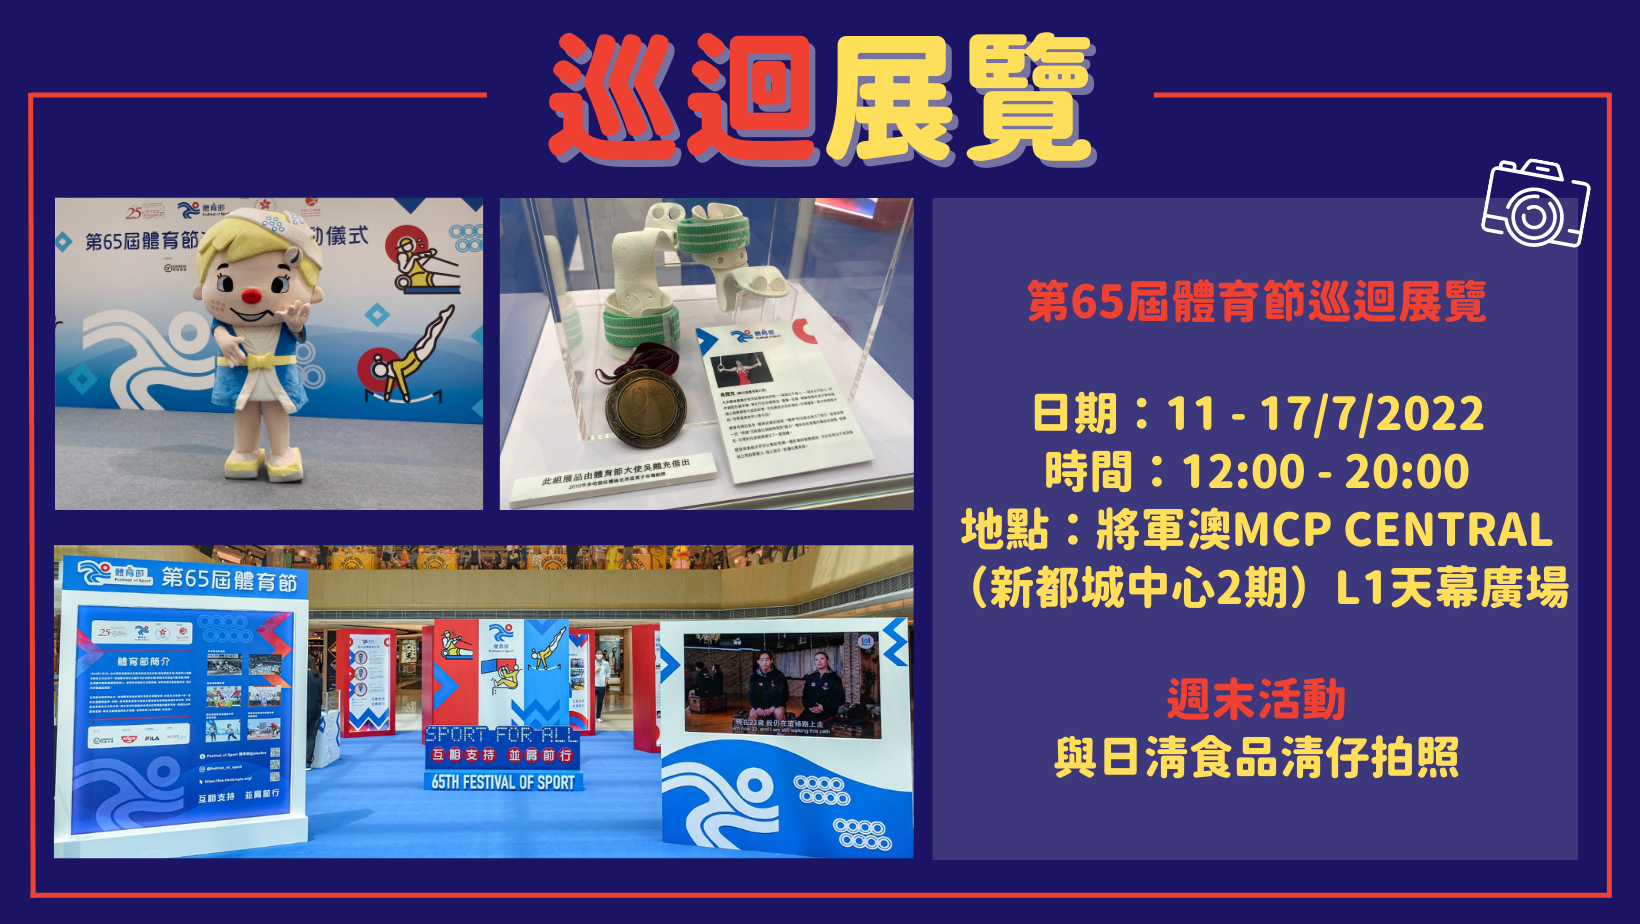 65th FOS Roving Exhibition - MCP CENTRAL, Tseung Kwan O